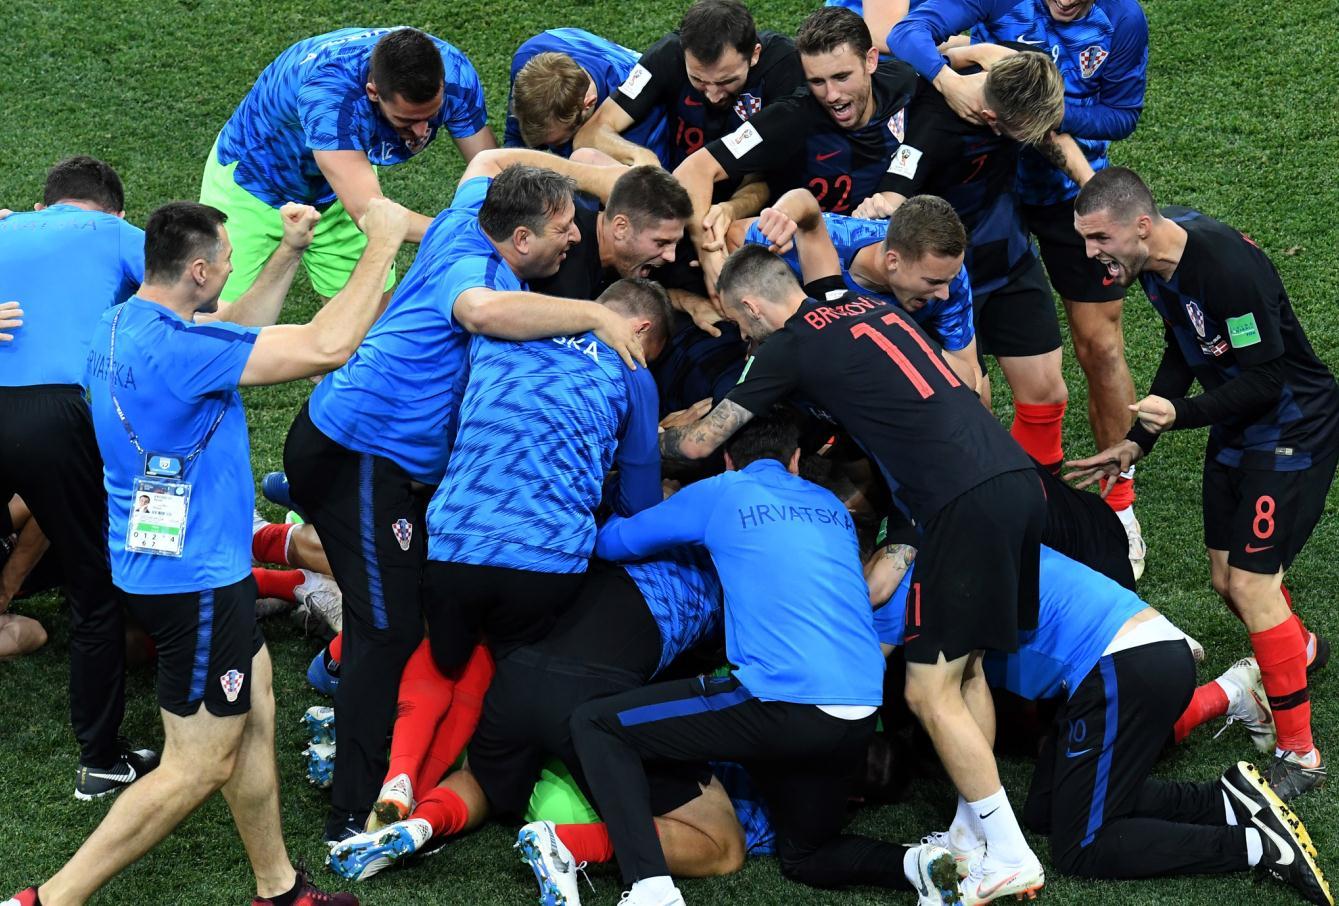 Ruski i američki ambasadori se na Facebooku posvađali zbog fudbala i Hrvatske